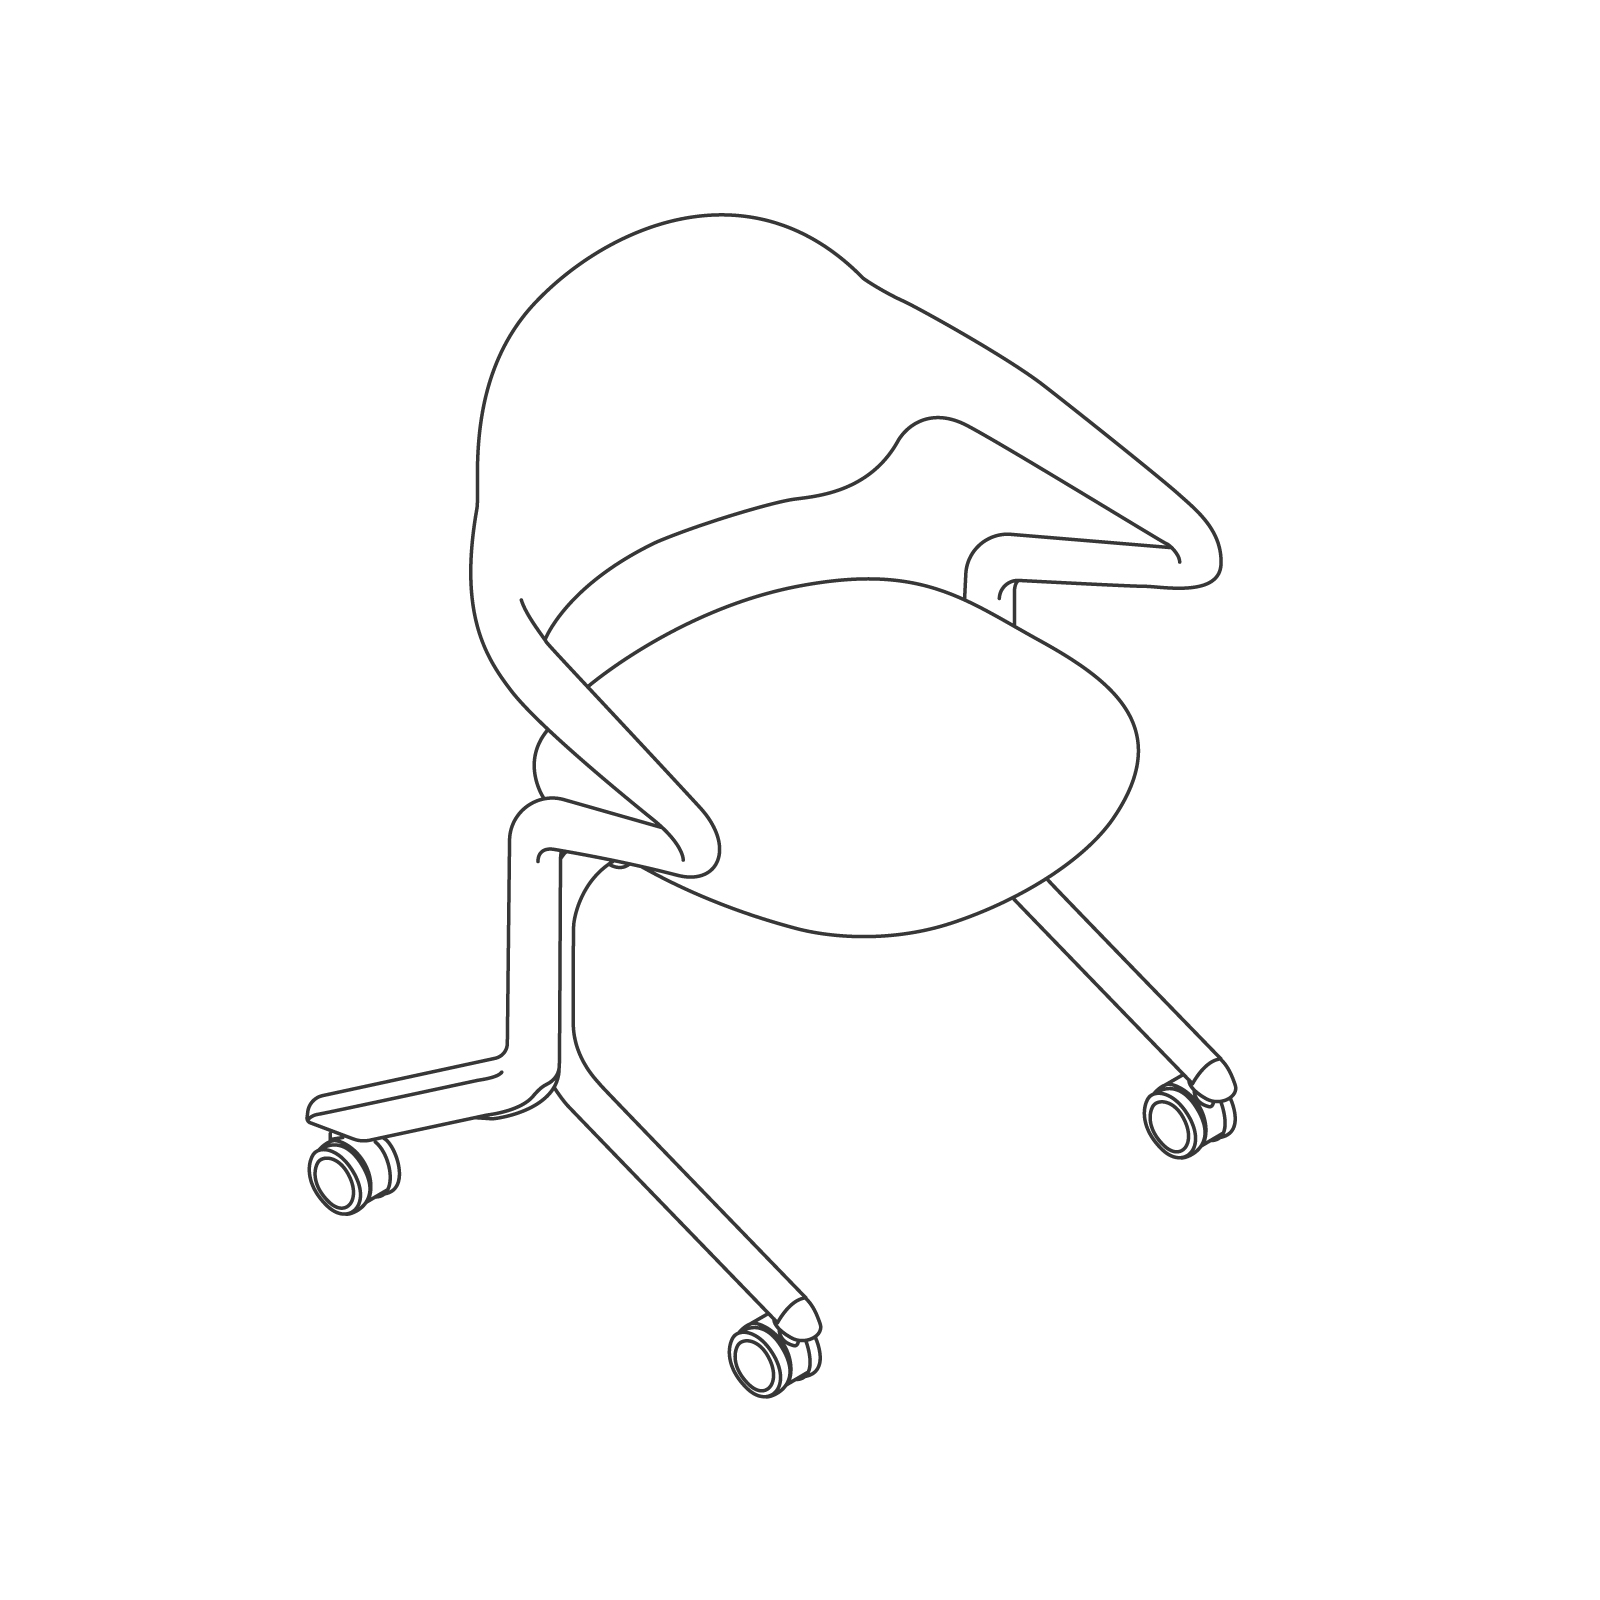 Dessin au trait : Fuld Nesting Chair